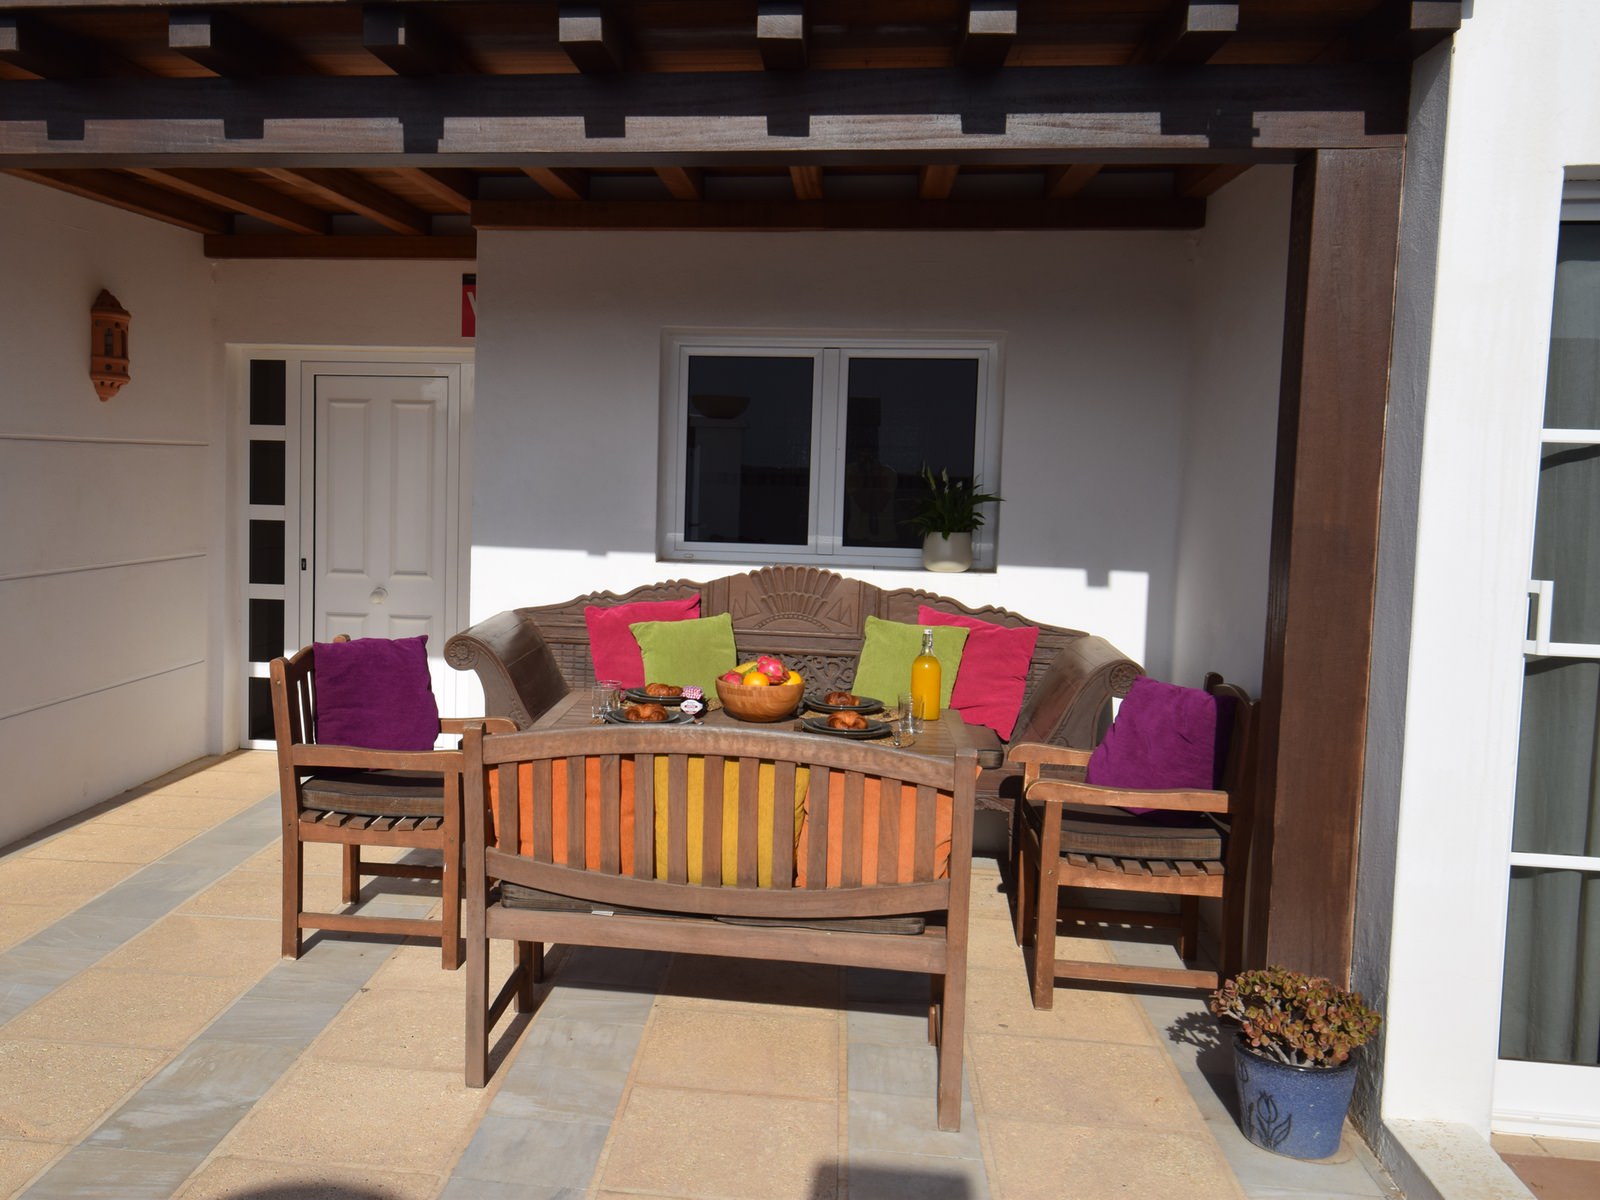 4 Bedroom Villa Las Calas with Heated Pool & Hot Tub